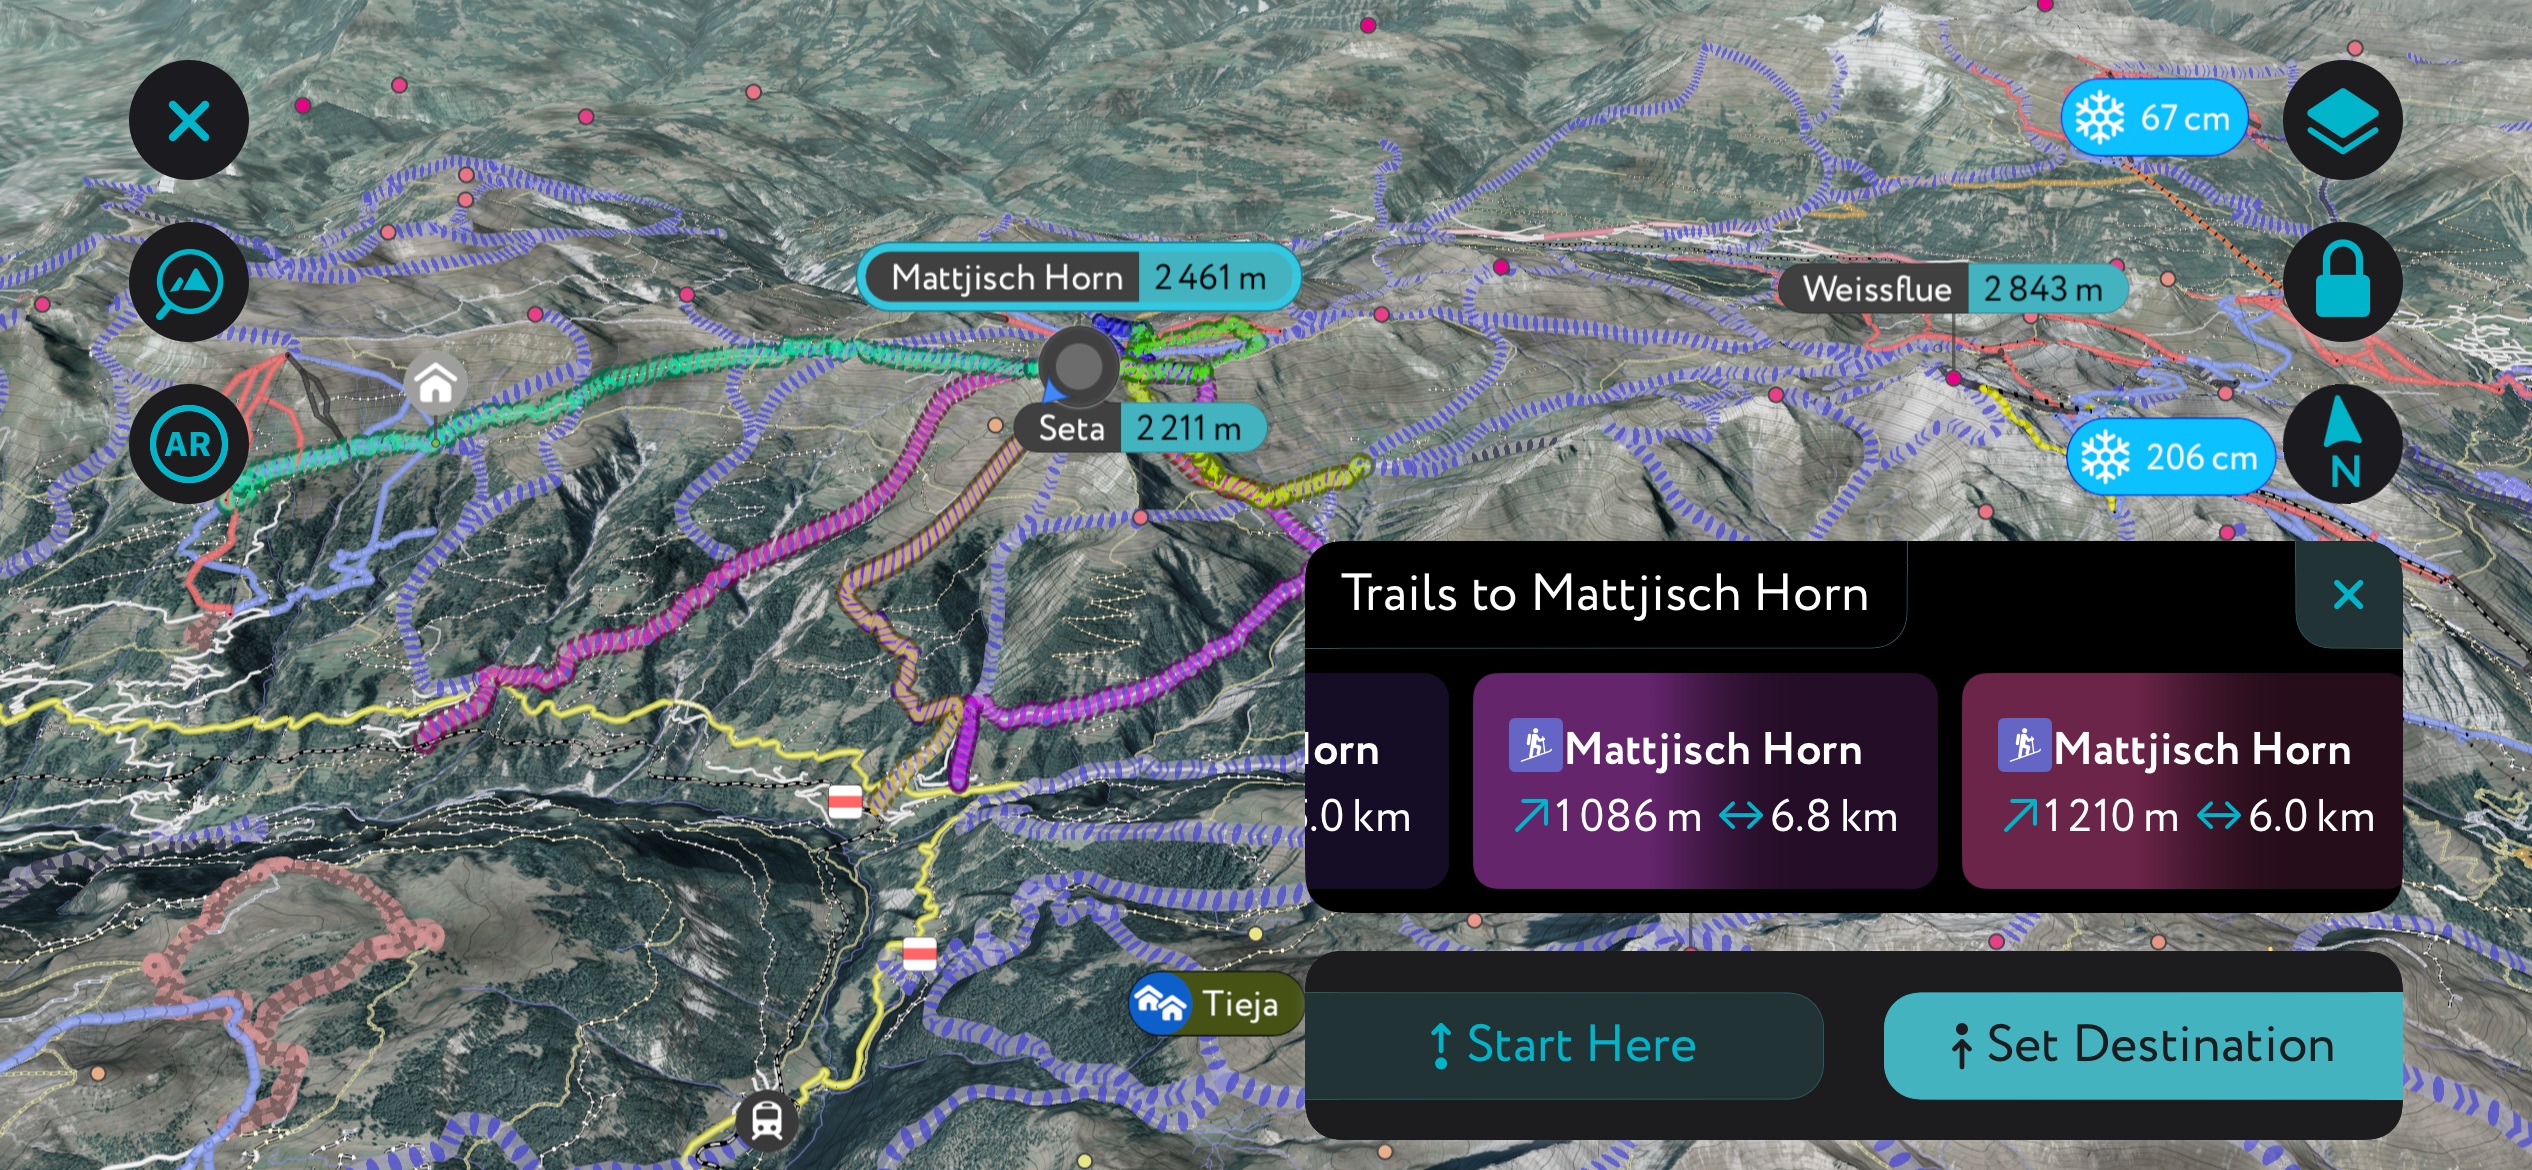 Mattjisch Horn ski tours on PeakVisor. Plessur Alps